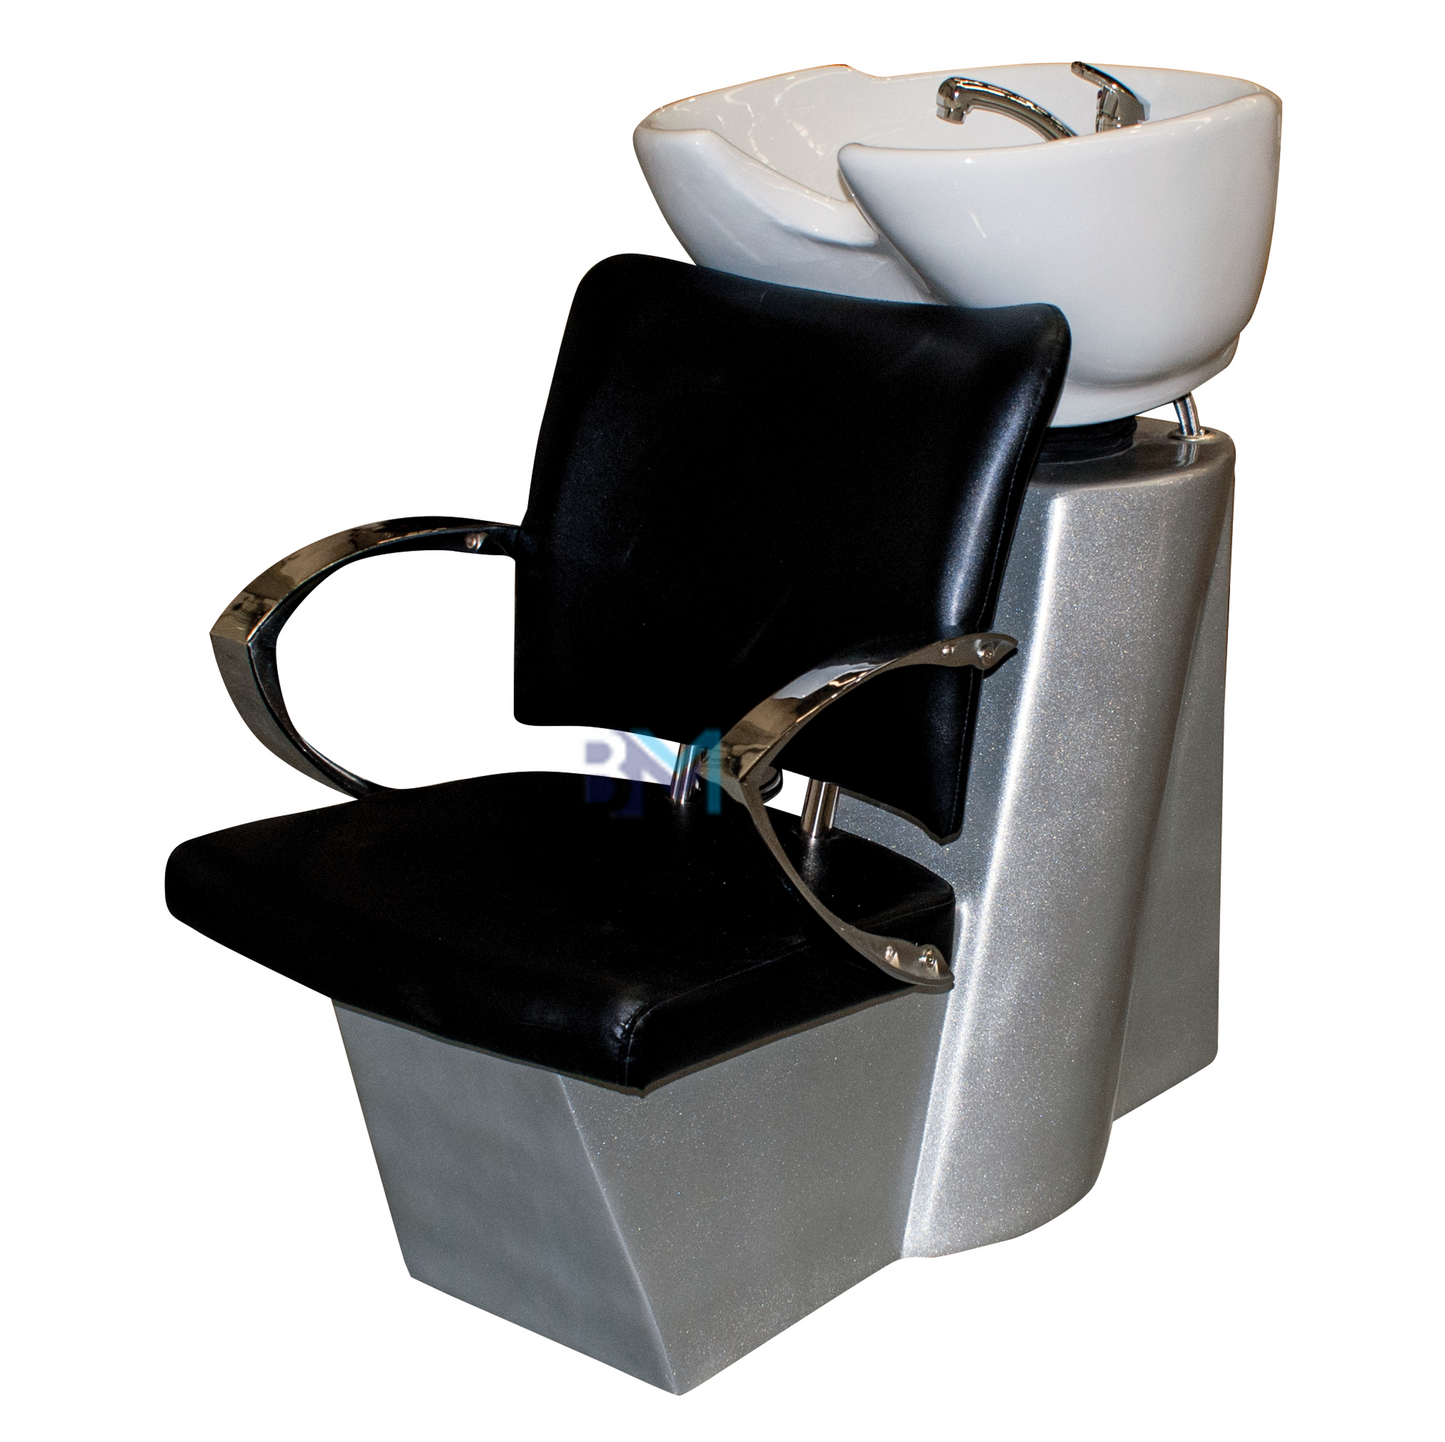 Lavacabezas negro con apoyabrazos cromados, asiento ajustable y cerámica de color blanco